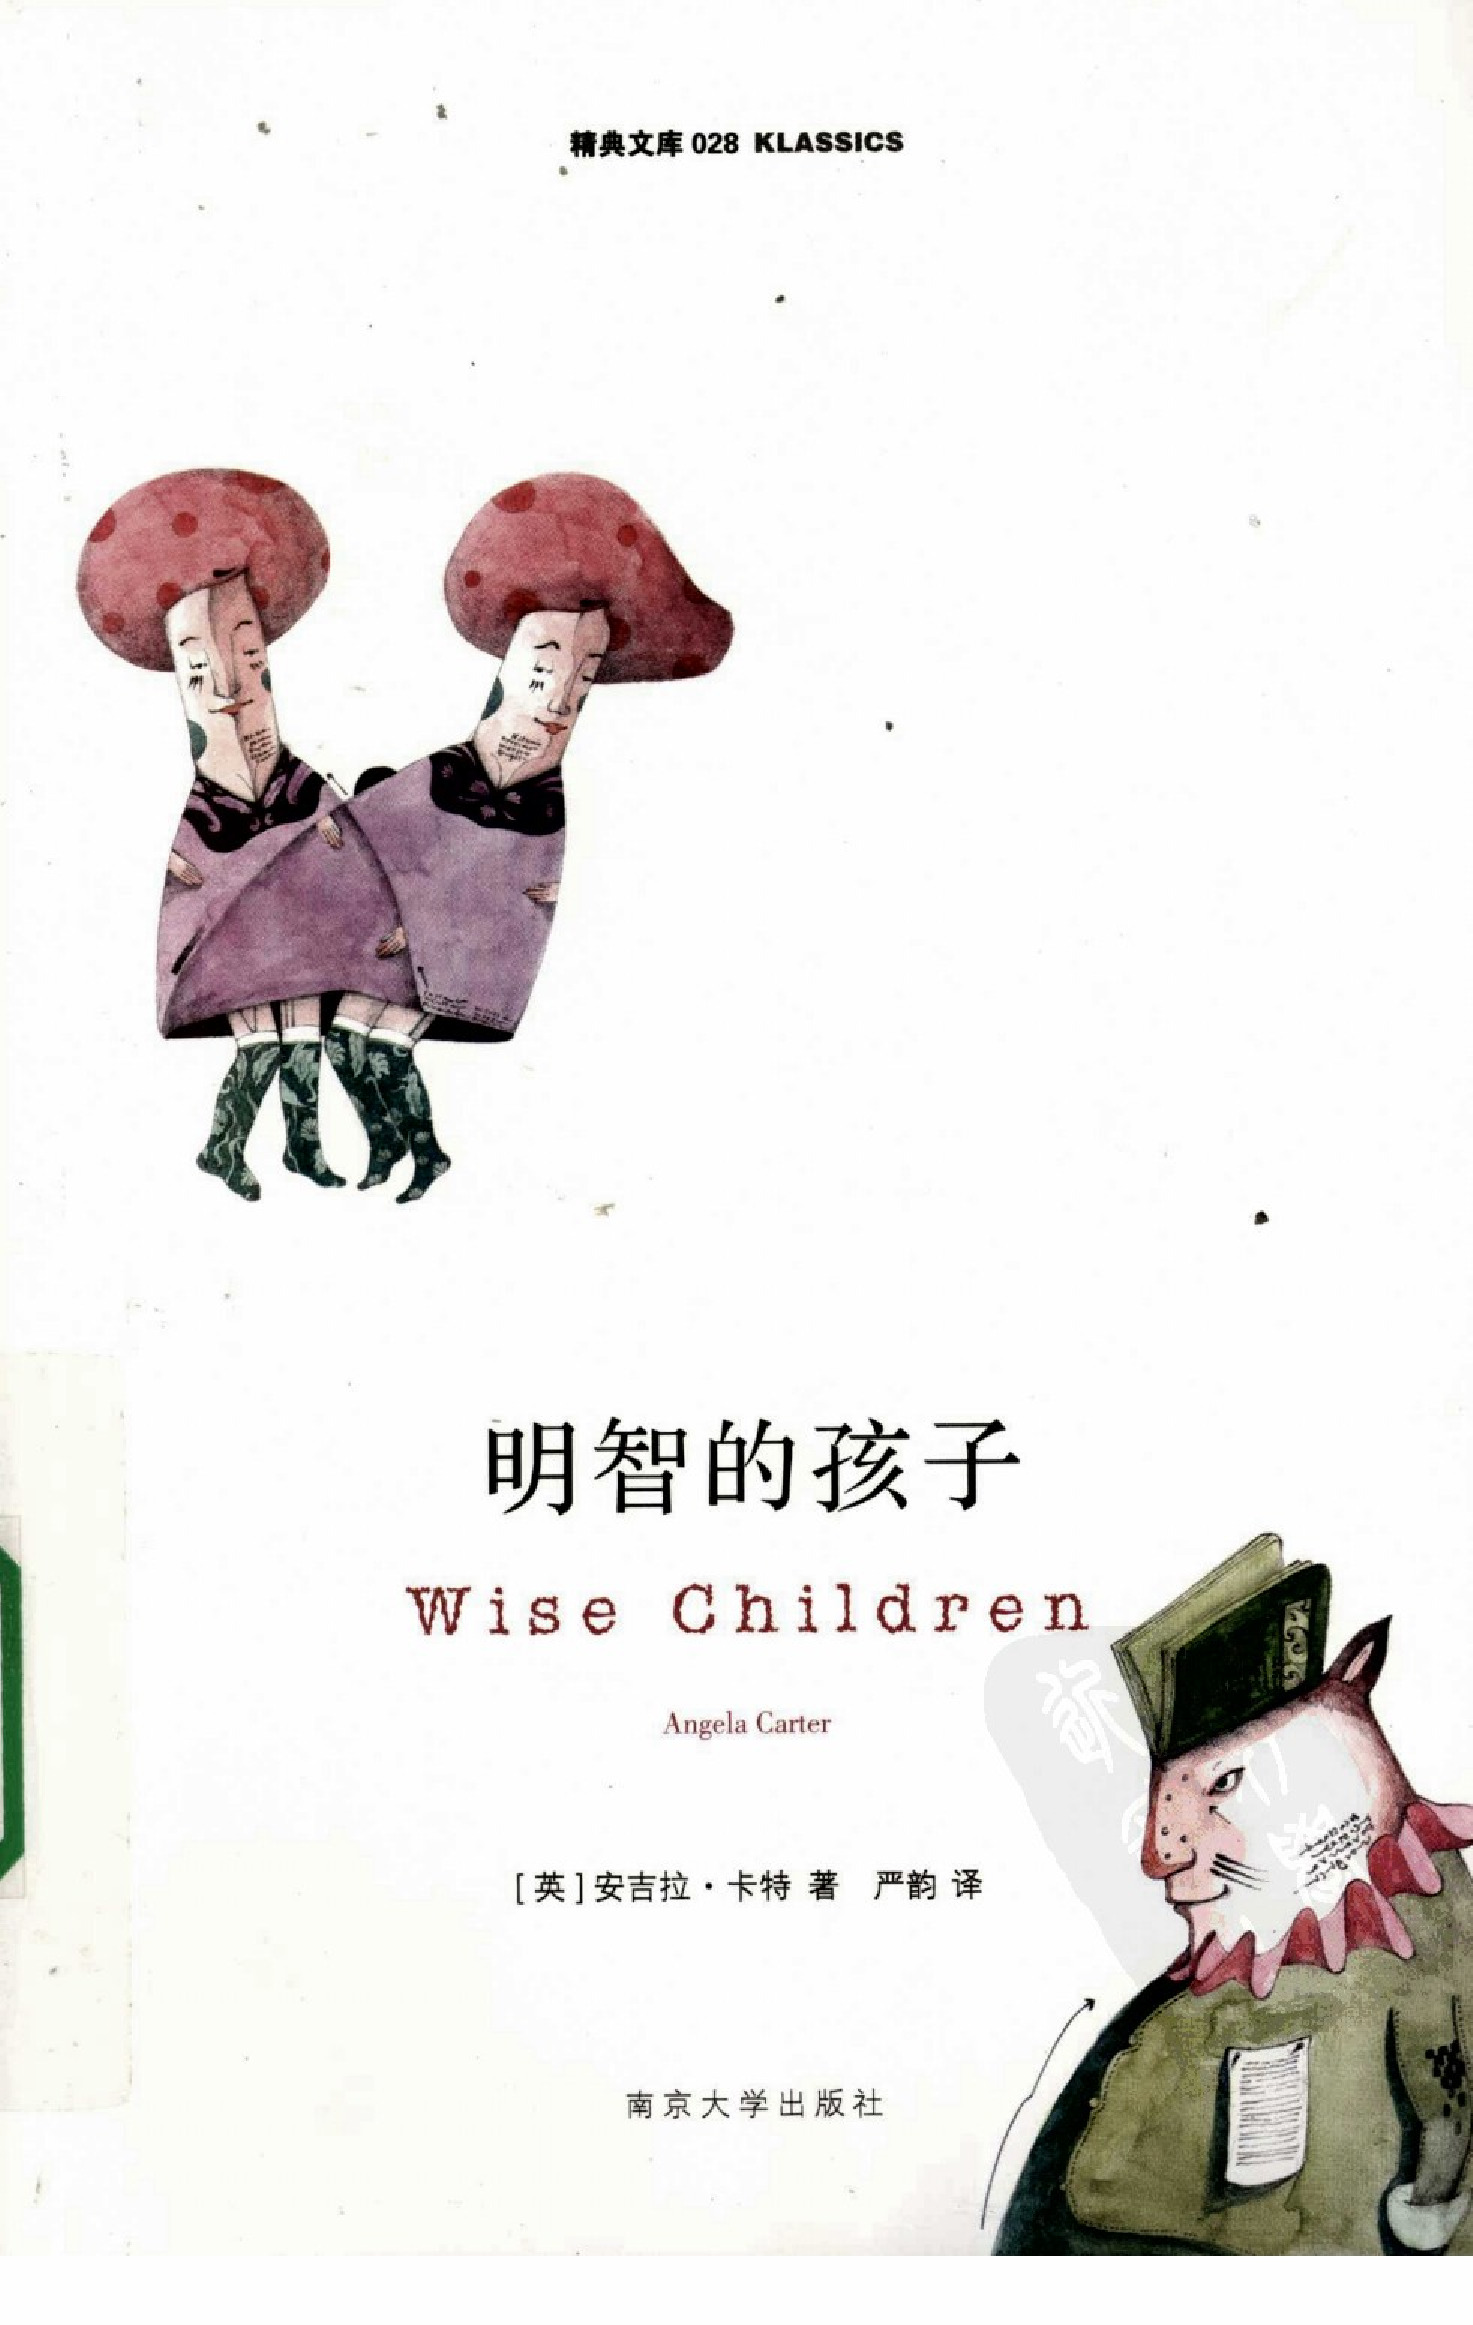 明智的孩子[英]安吉拉·卡特.严韵译.南京大学出版社(2009)